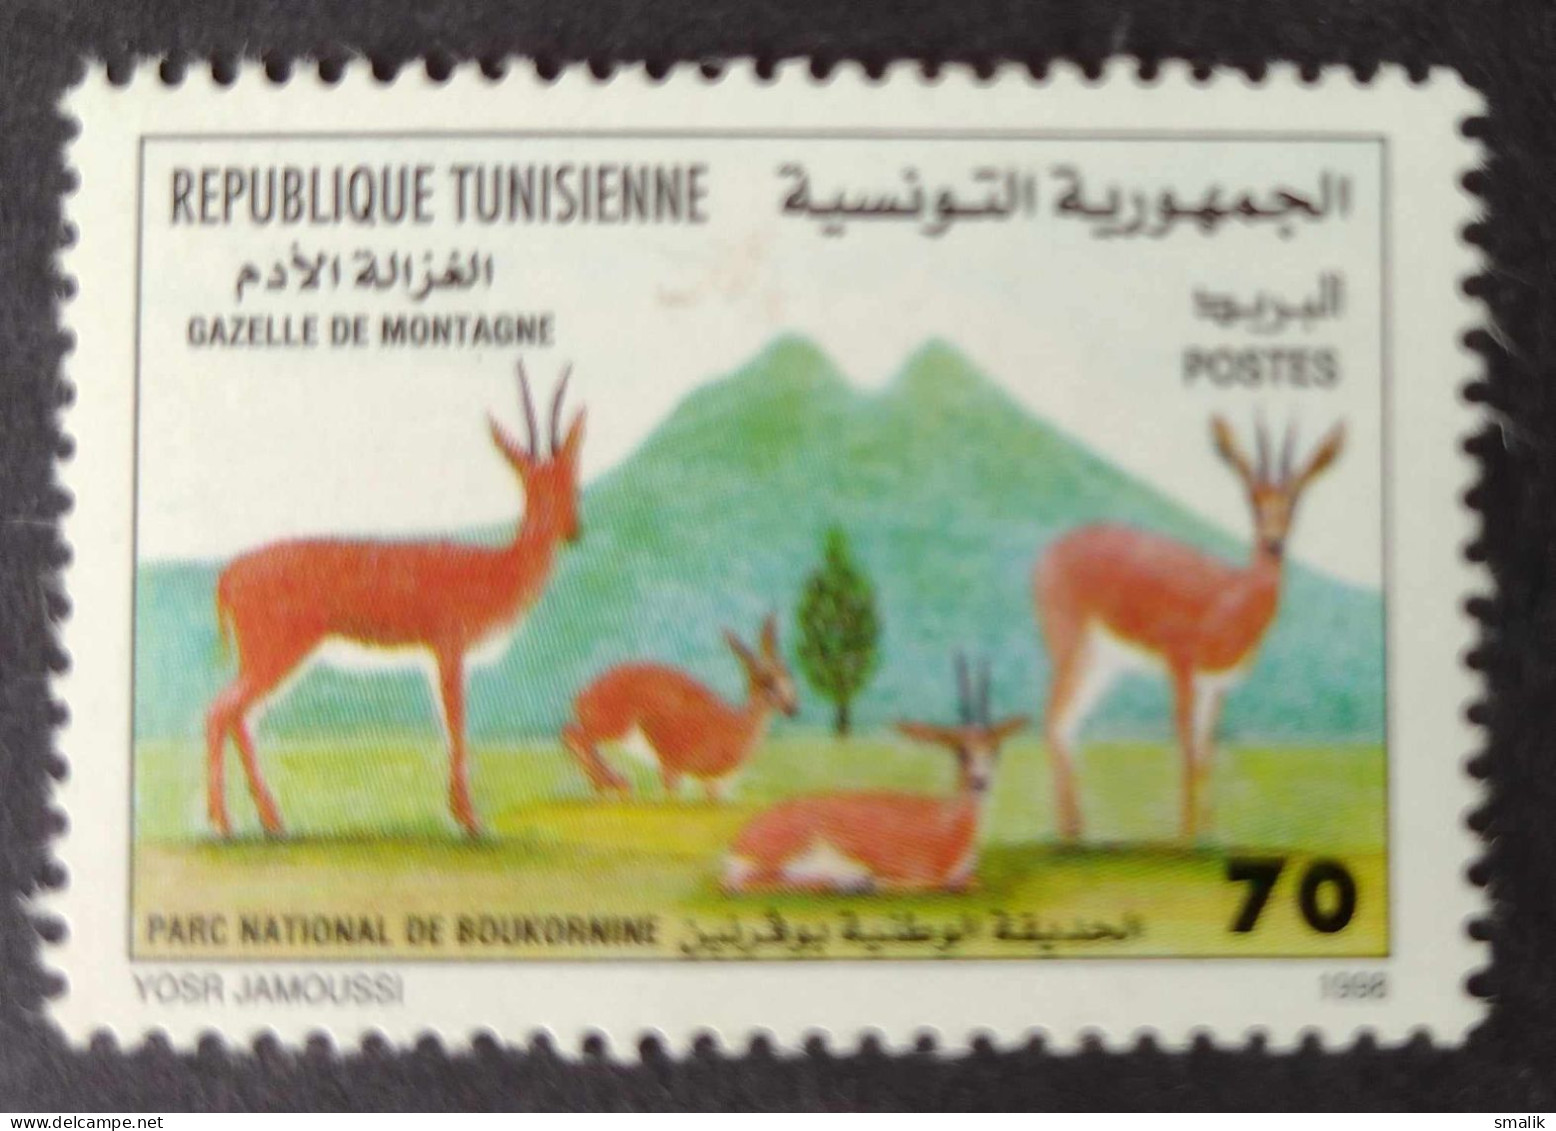 TUNIS TUNISIA 1998 - Gazelle Animals, MNH - Tunesië (1956-...)